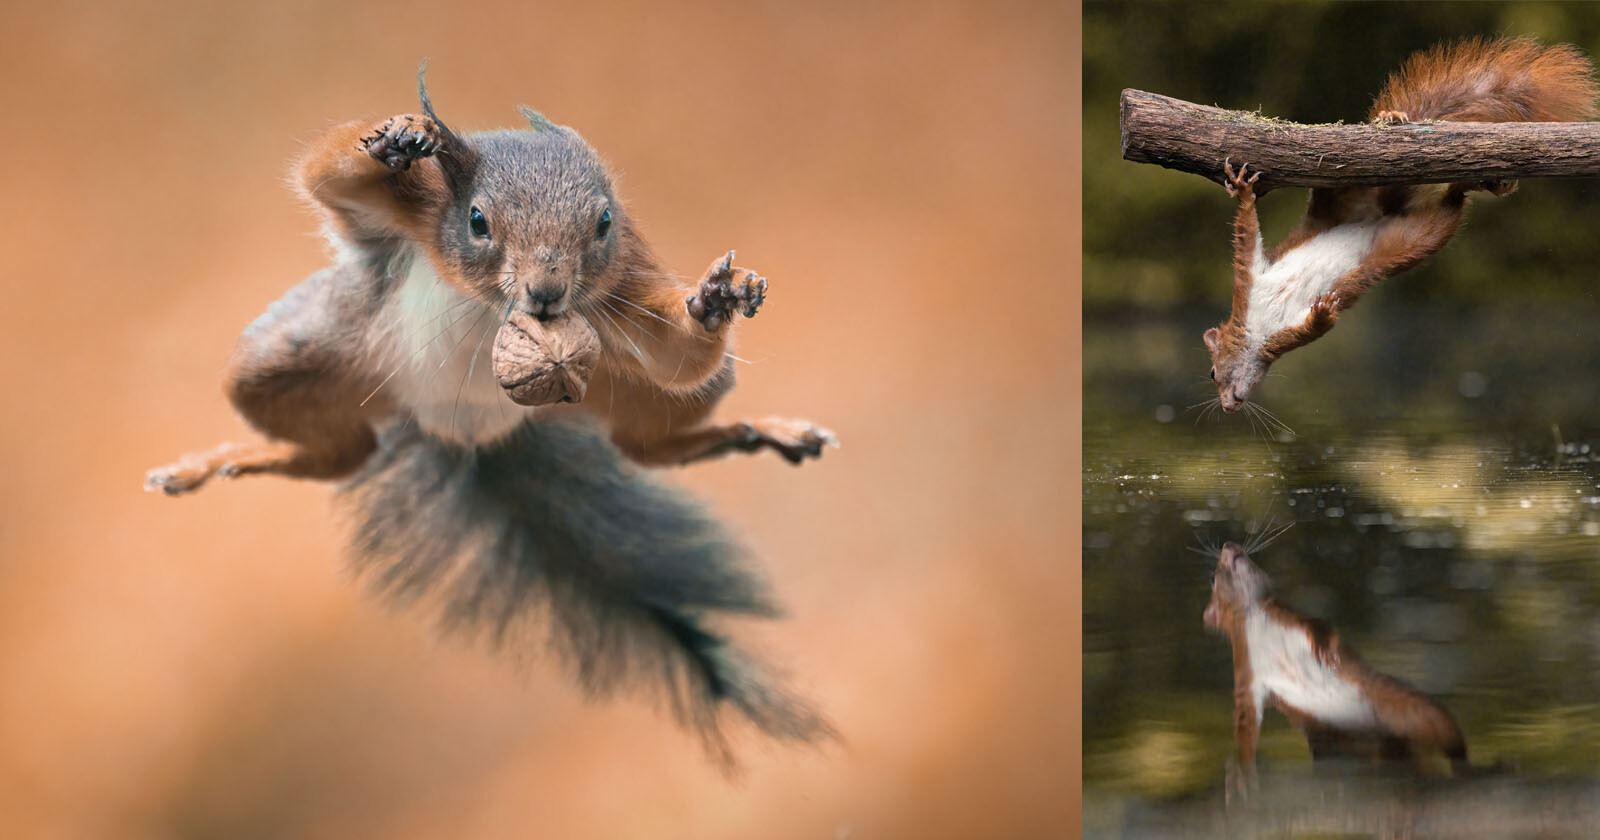  acrobatic squirrels captured series amazing photos 